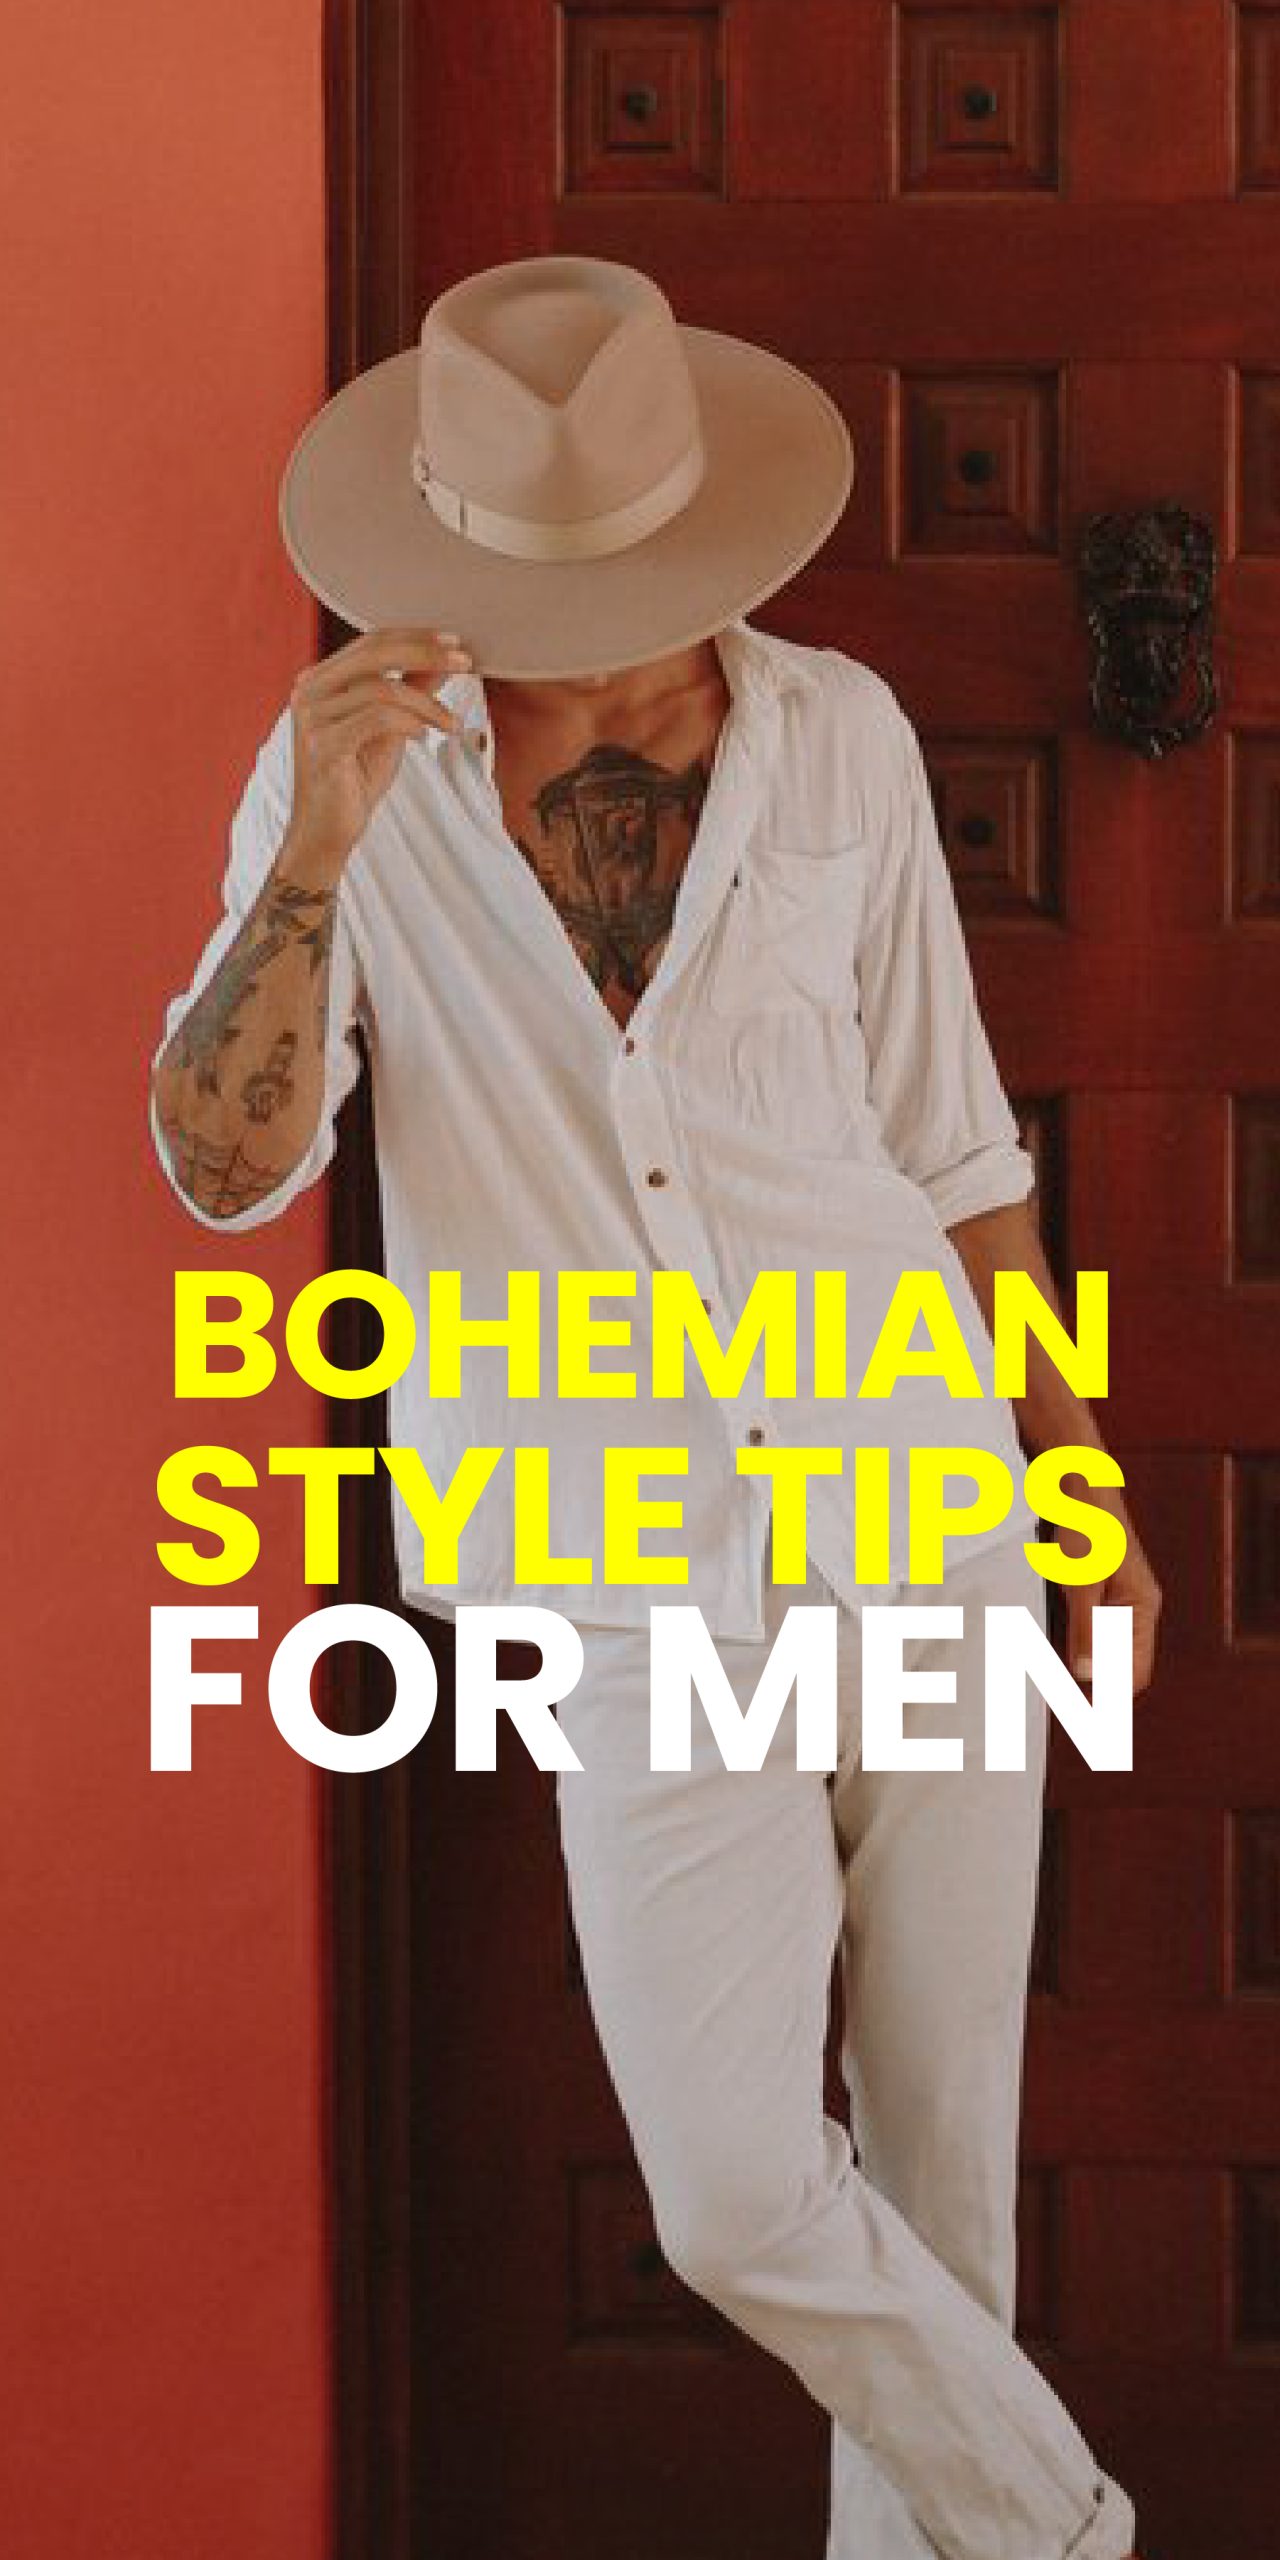 BOHEMIAN STUYLR TIPS FOR MEN